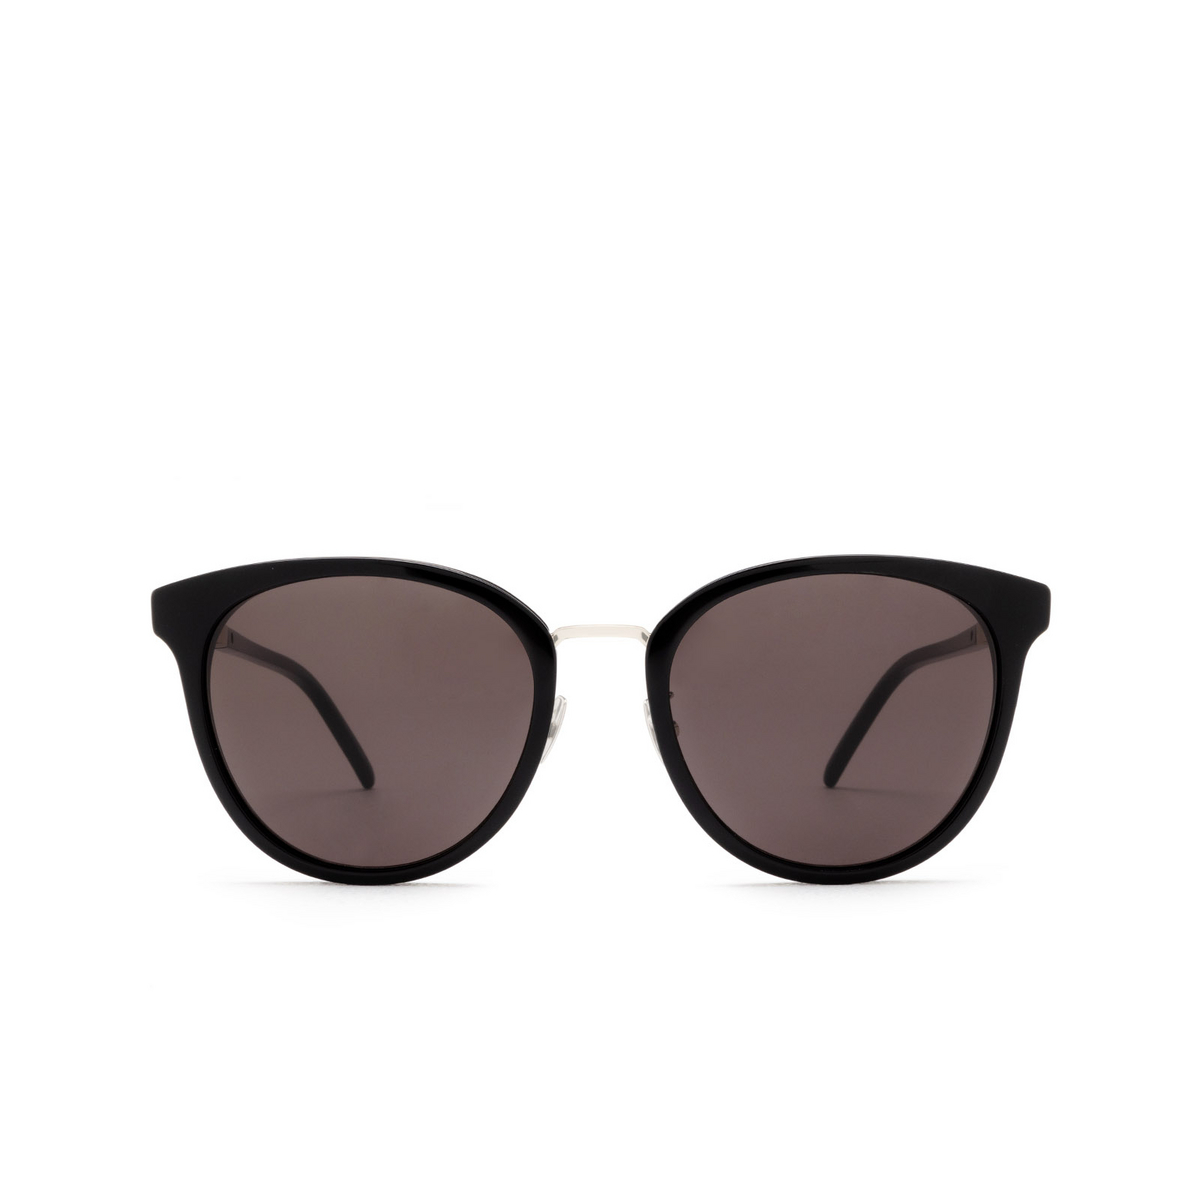 Saint Laurent SL M101 Sunglasses 001 Black - front view